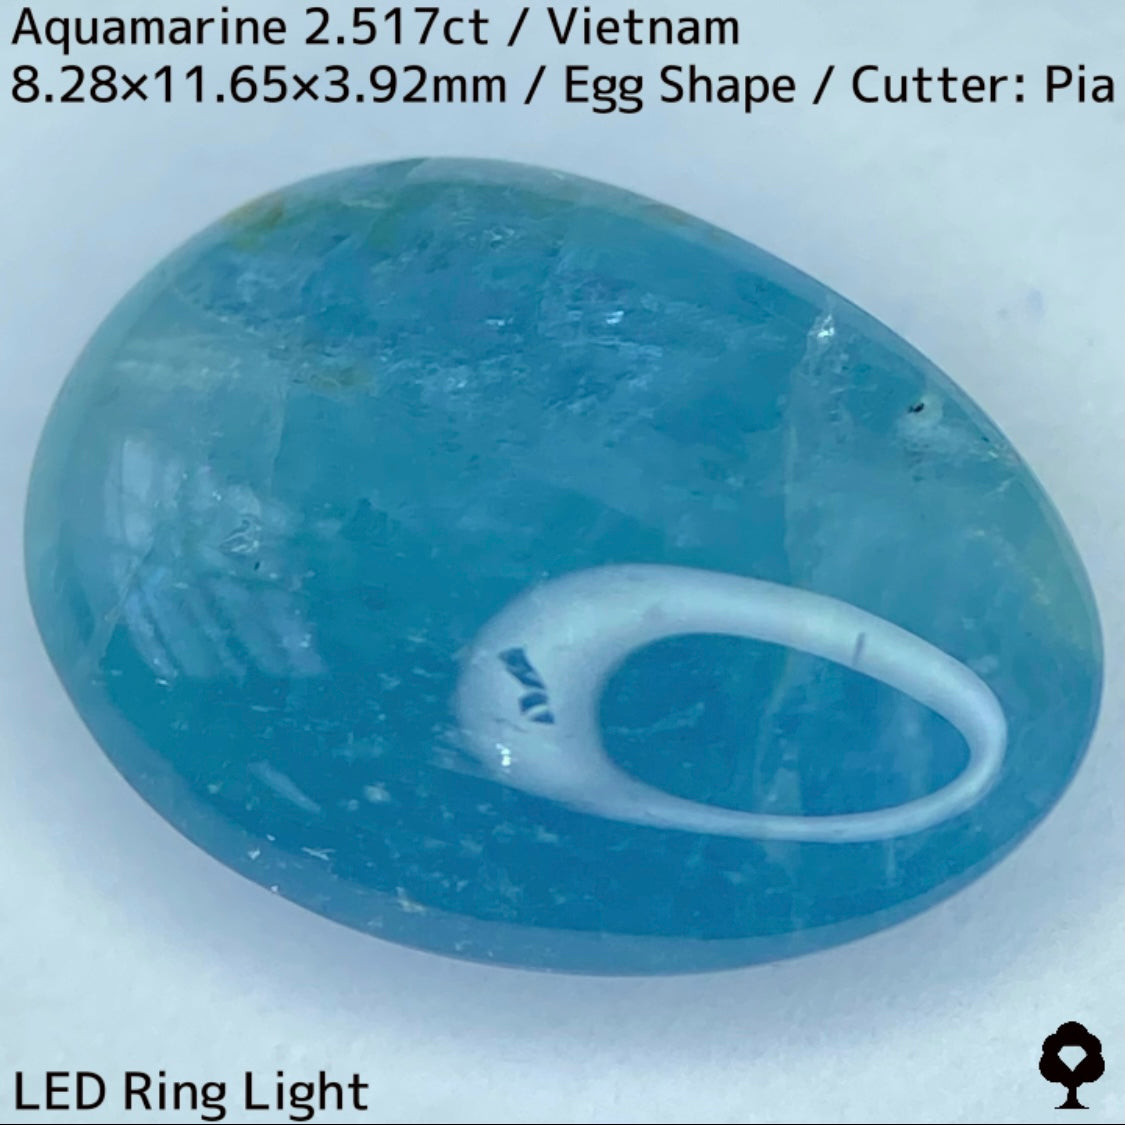 ベトナム産アクアマリン2.517ct★可愛い卵形カボションに仕上げた虹がチラつくグリニッシュブルー